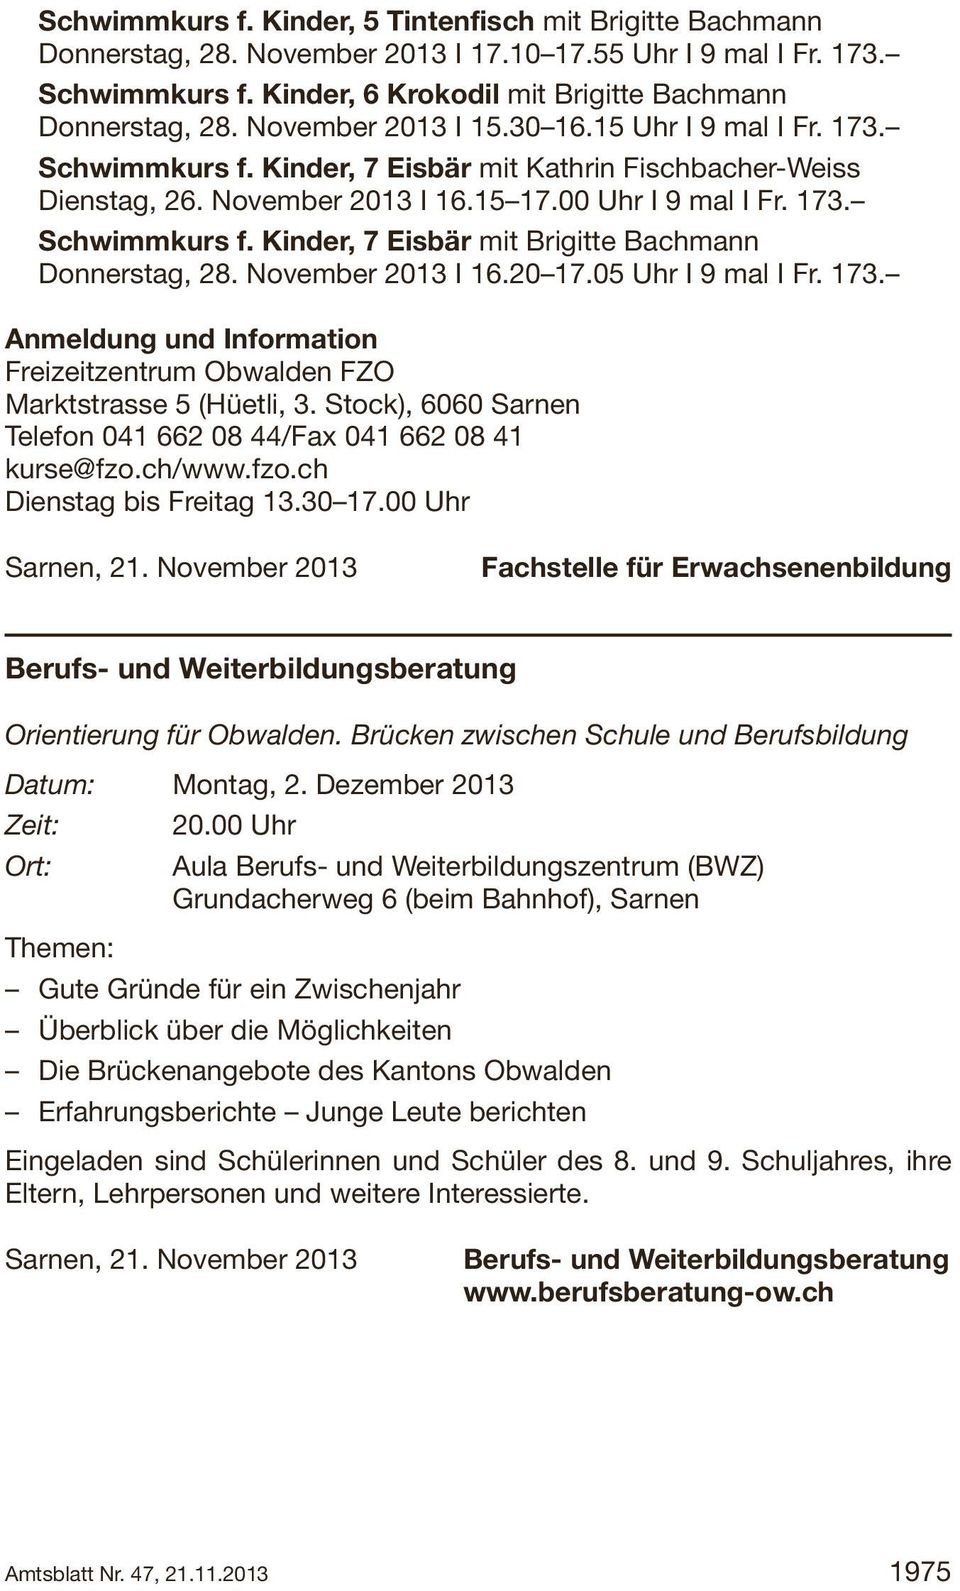 November 2013 I 16.20 17.05 Uhr I 9 mal I Fr. 173. Anmeldung und Information Freizeitzentrum Obwalden FZO Marktstrasse 5 (Hüetli, 3.